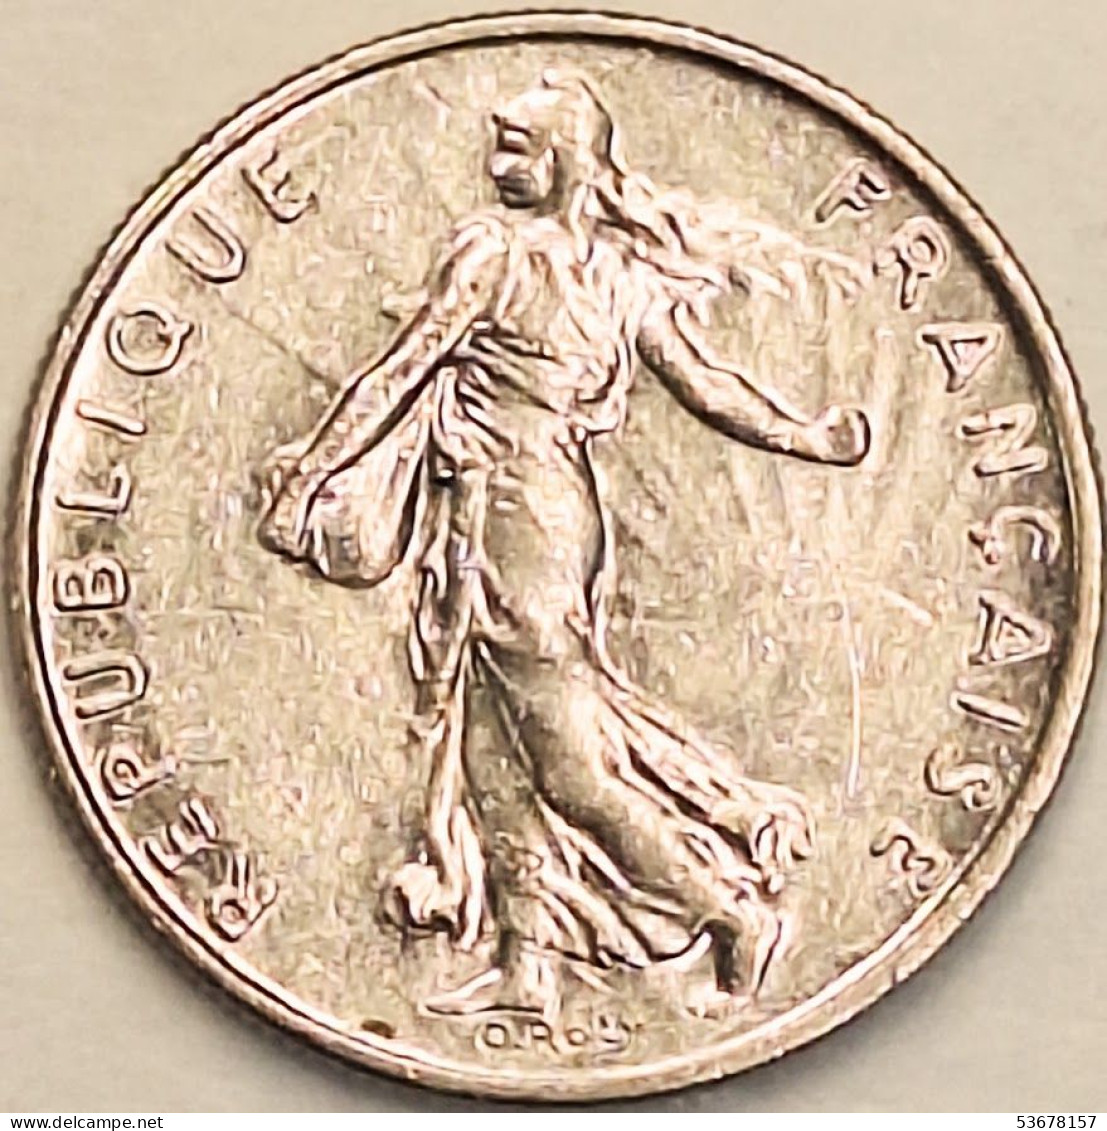 France - 1/2 Franc 1983, KM# 931.1 (#4298) - 1/2 Franc